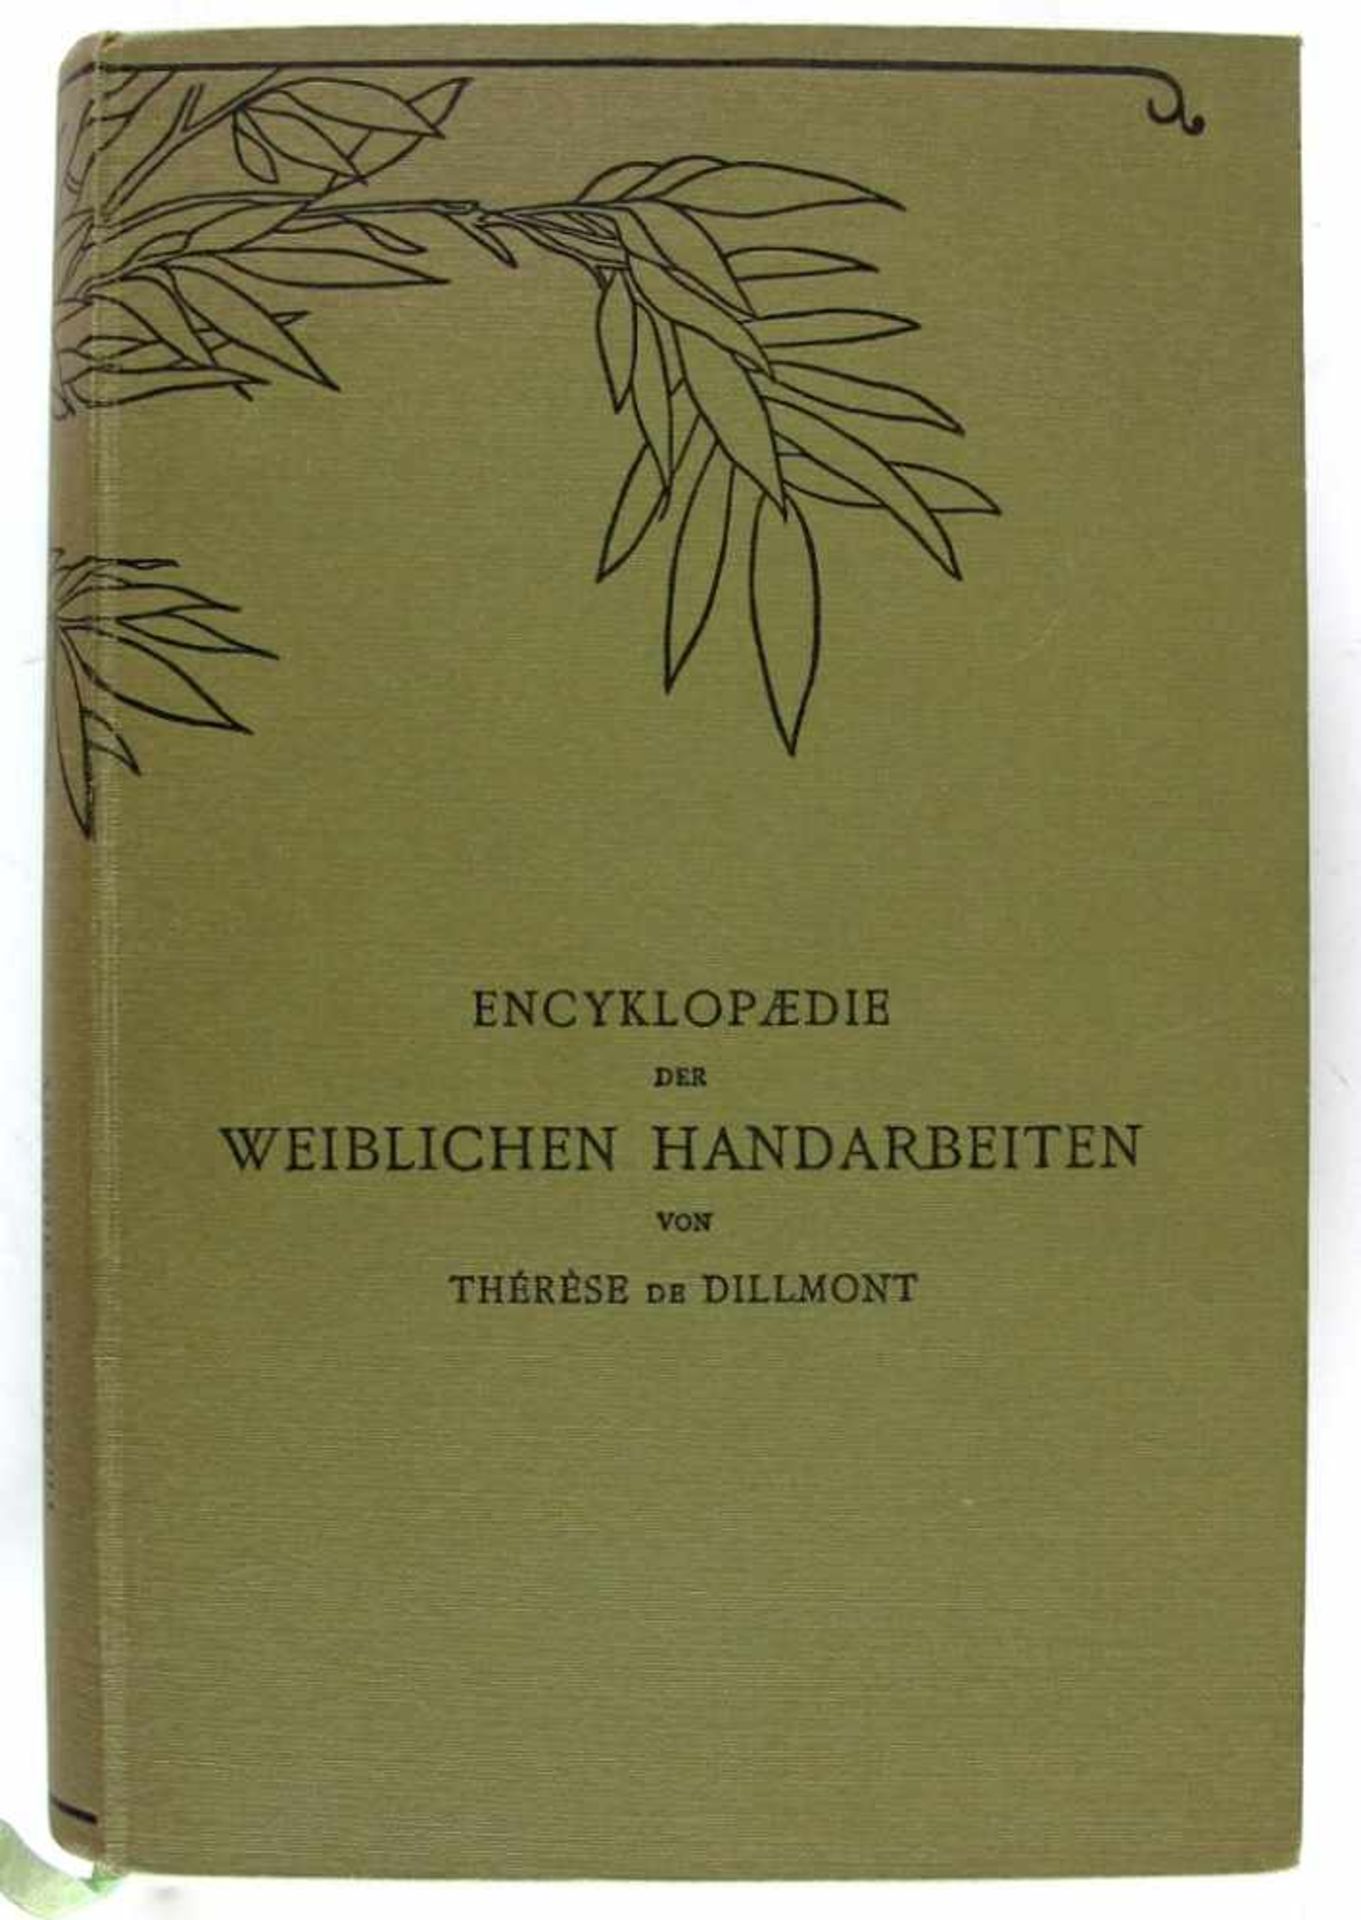 Handarbeit: Dillmont, Therese von. Encyklopaedie der weiblichen Handarbeiten. Neue vermehrte und